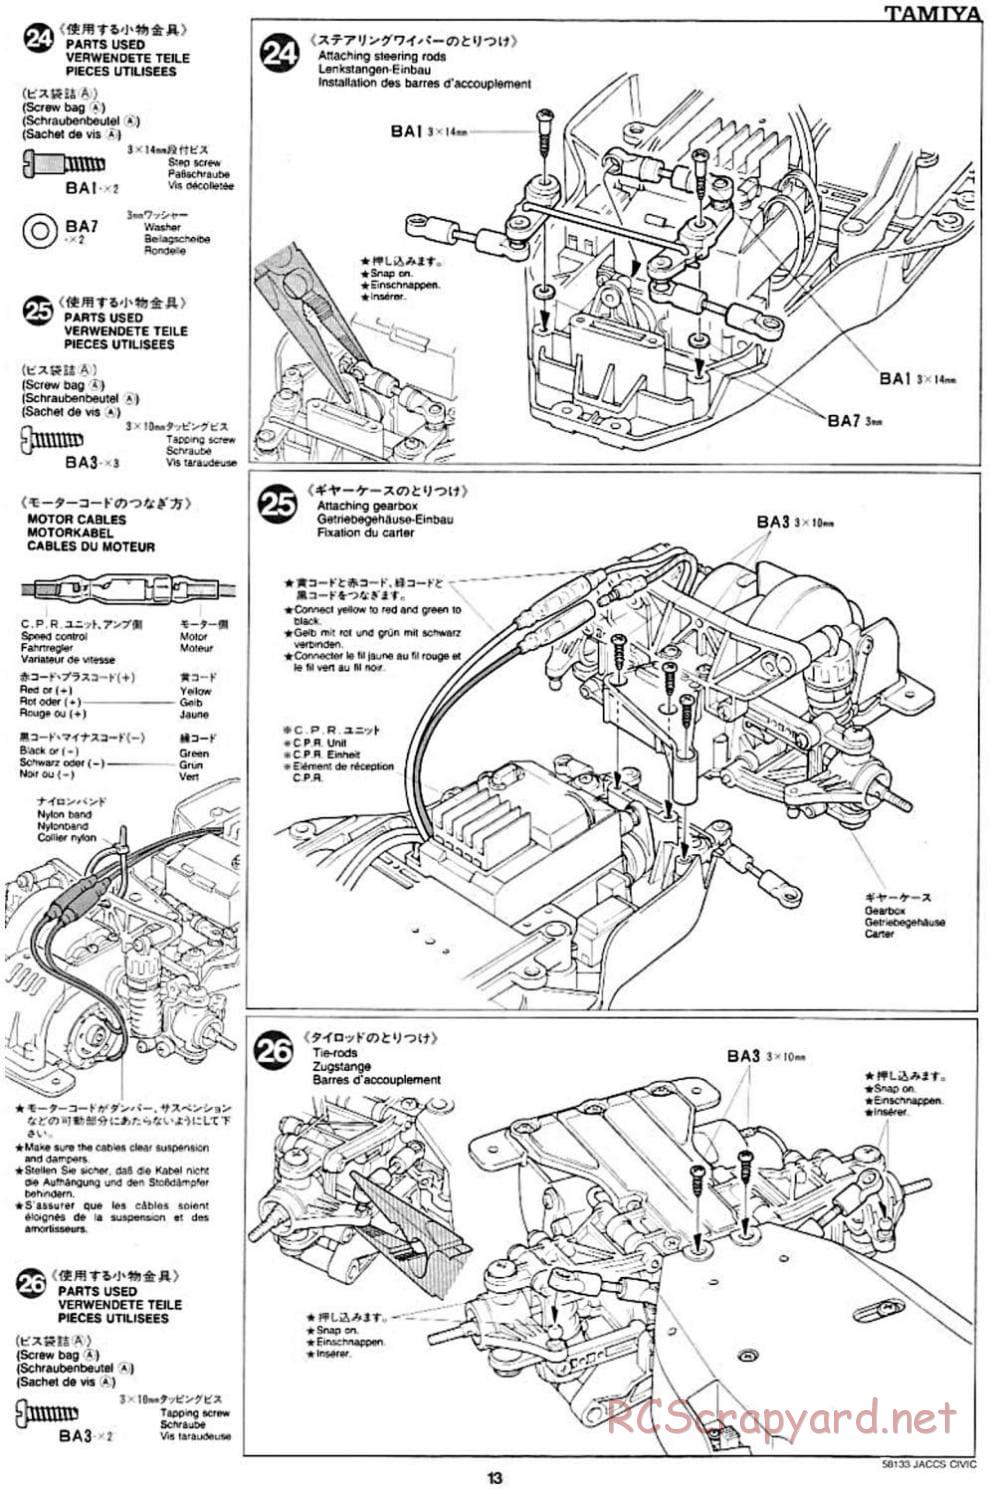 Tamiya - JACCS Honda Civic - FF-01 Chassis - Manual - Page 13